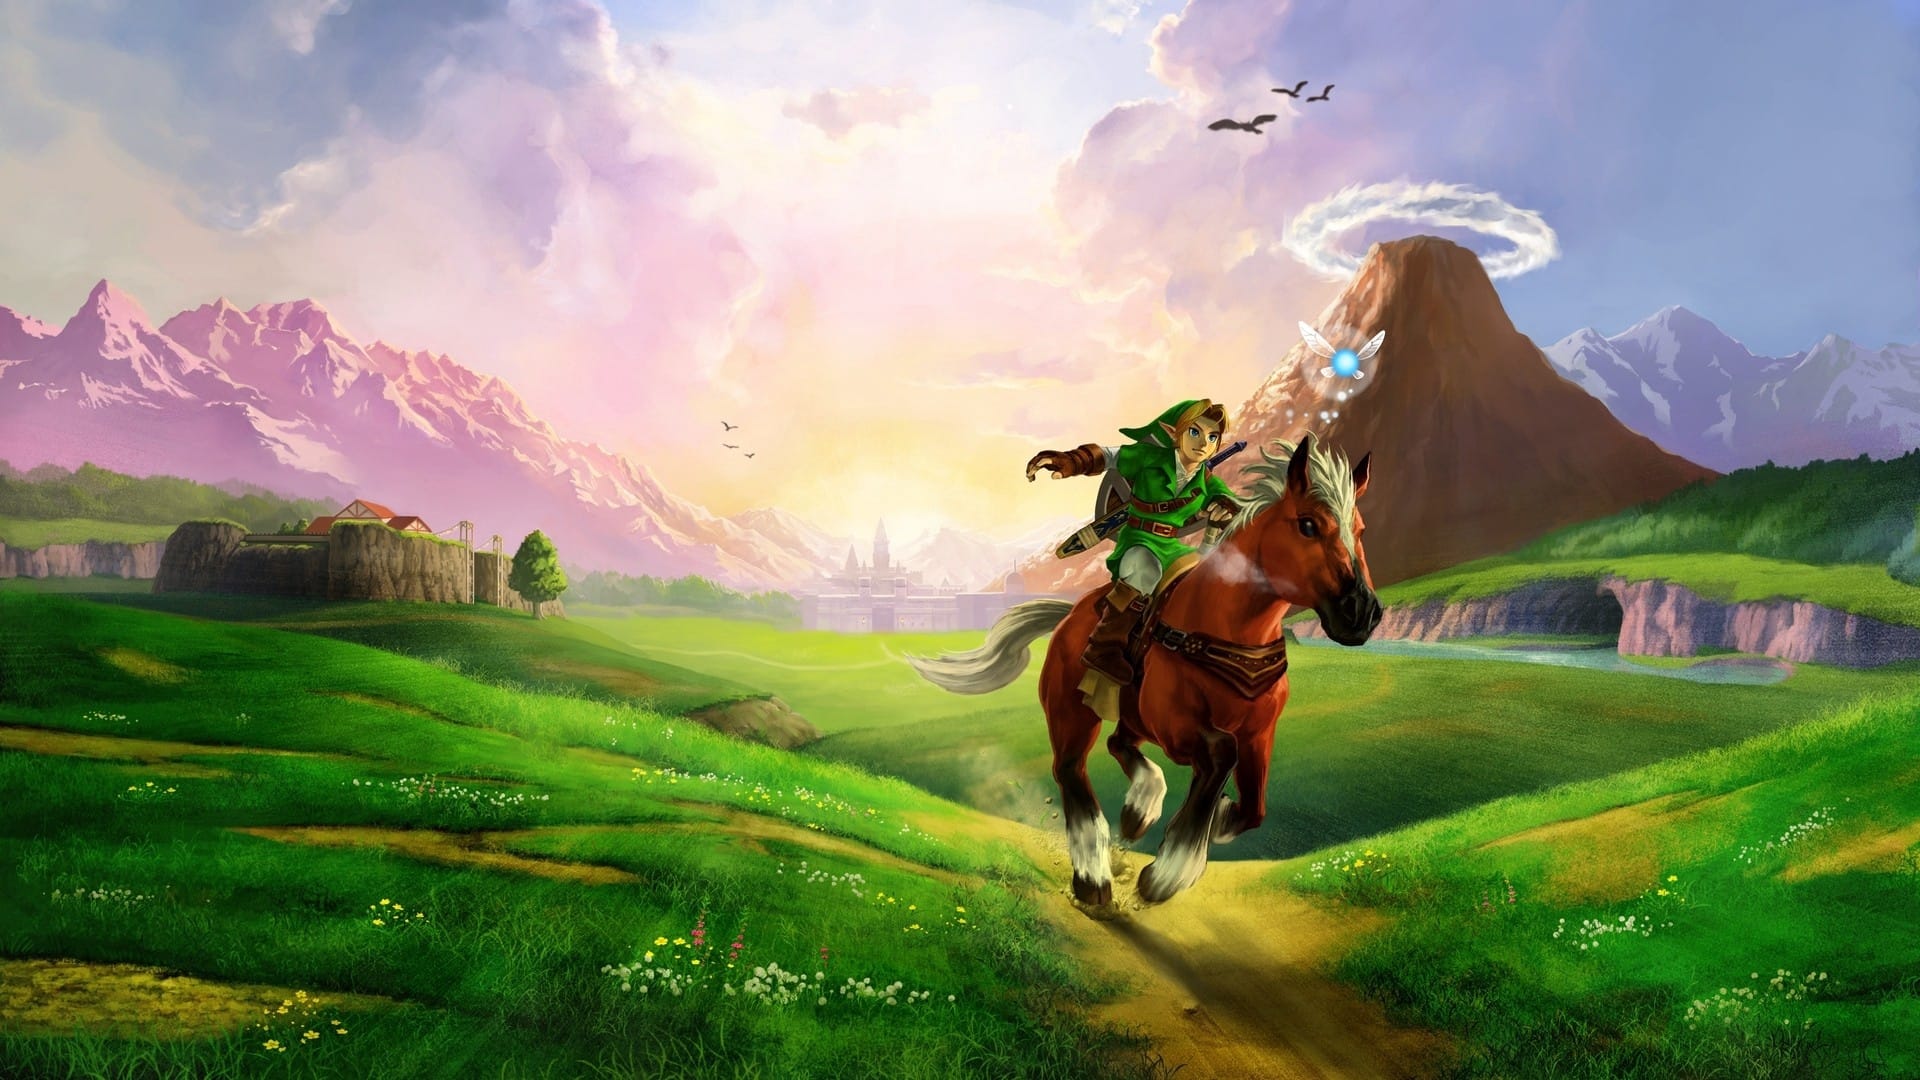 1. The Legend of Zelda 